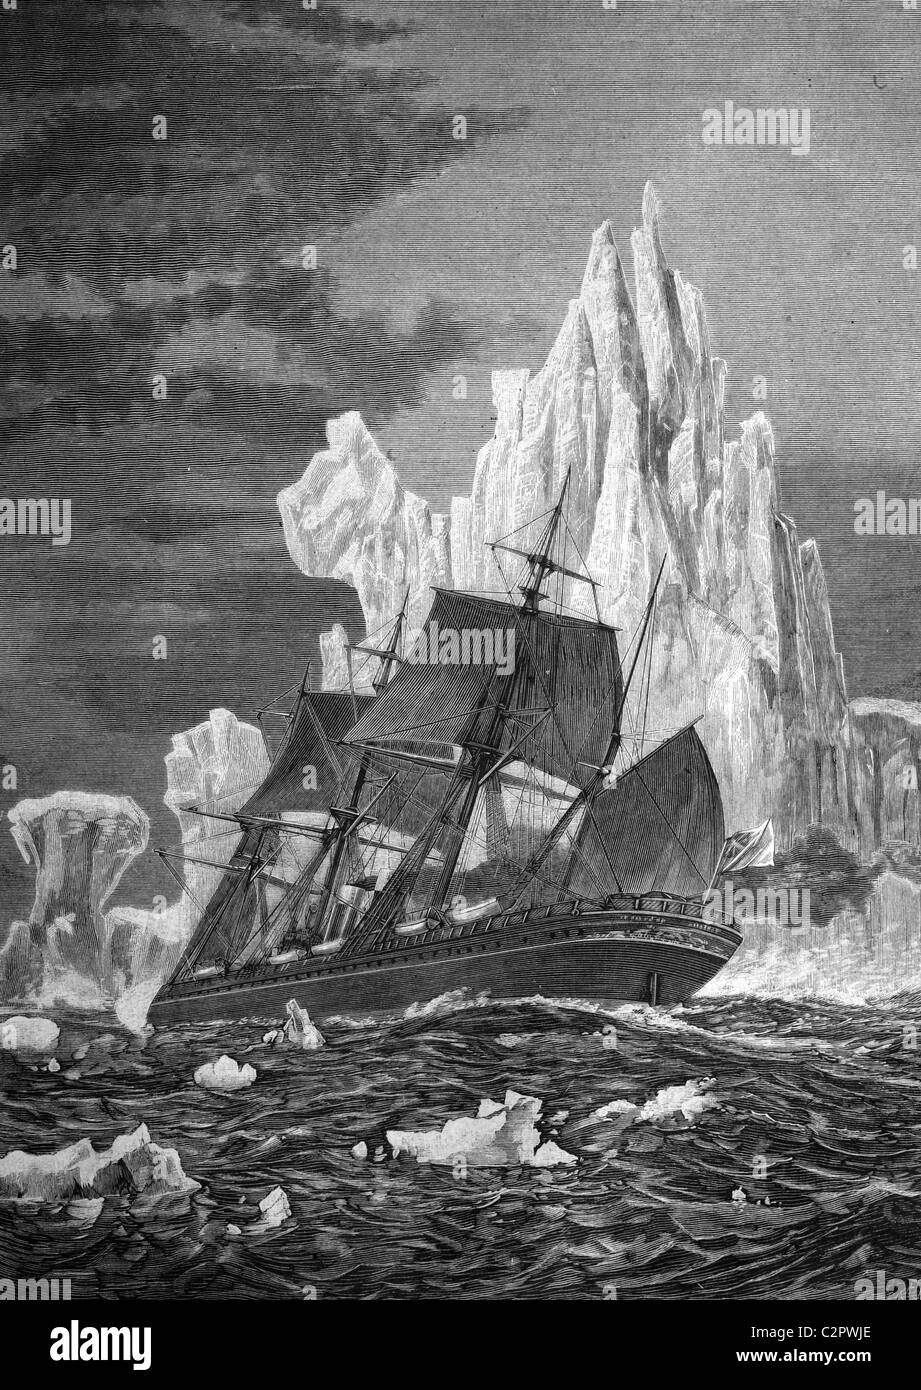 Bateau à voile face à un iceberg, illustration historique, vers 1886 Banque D'Images